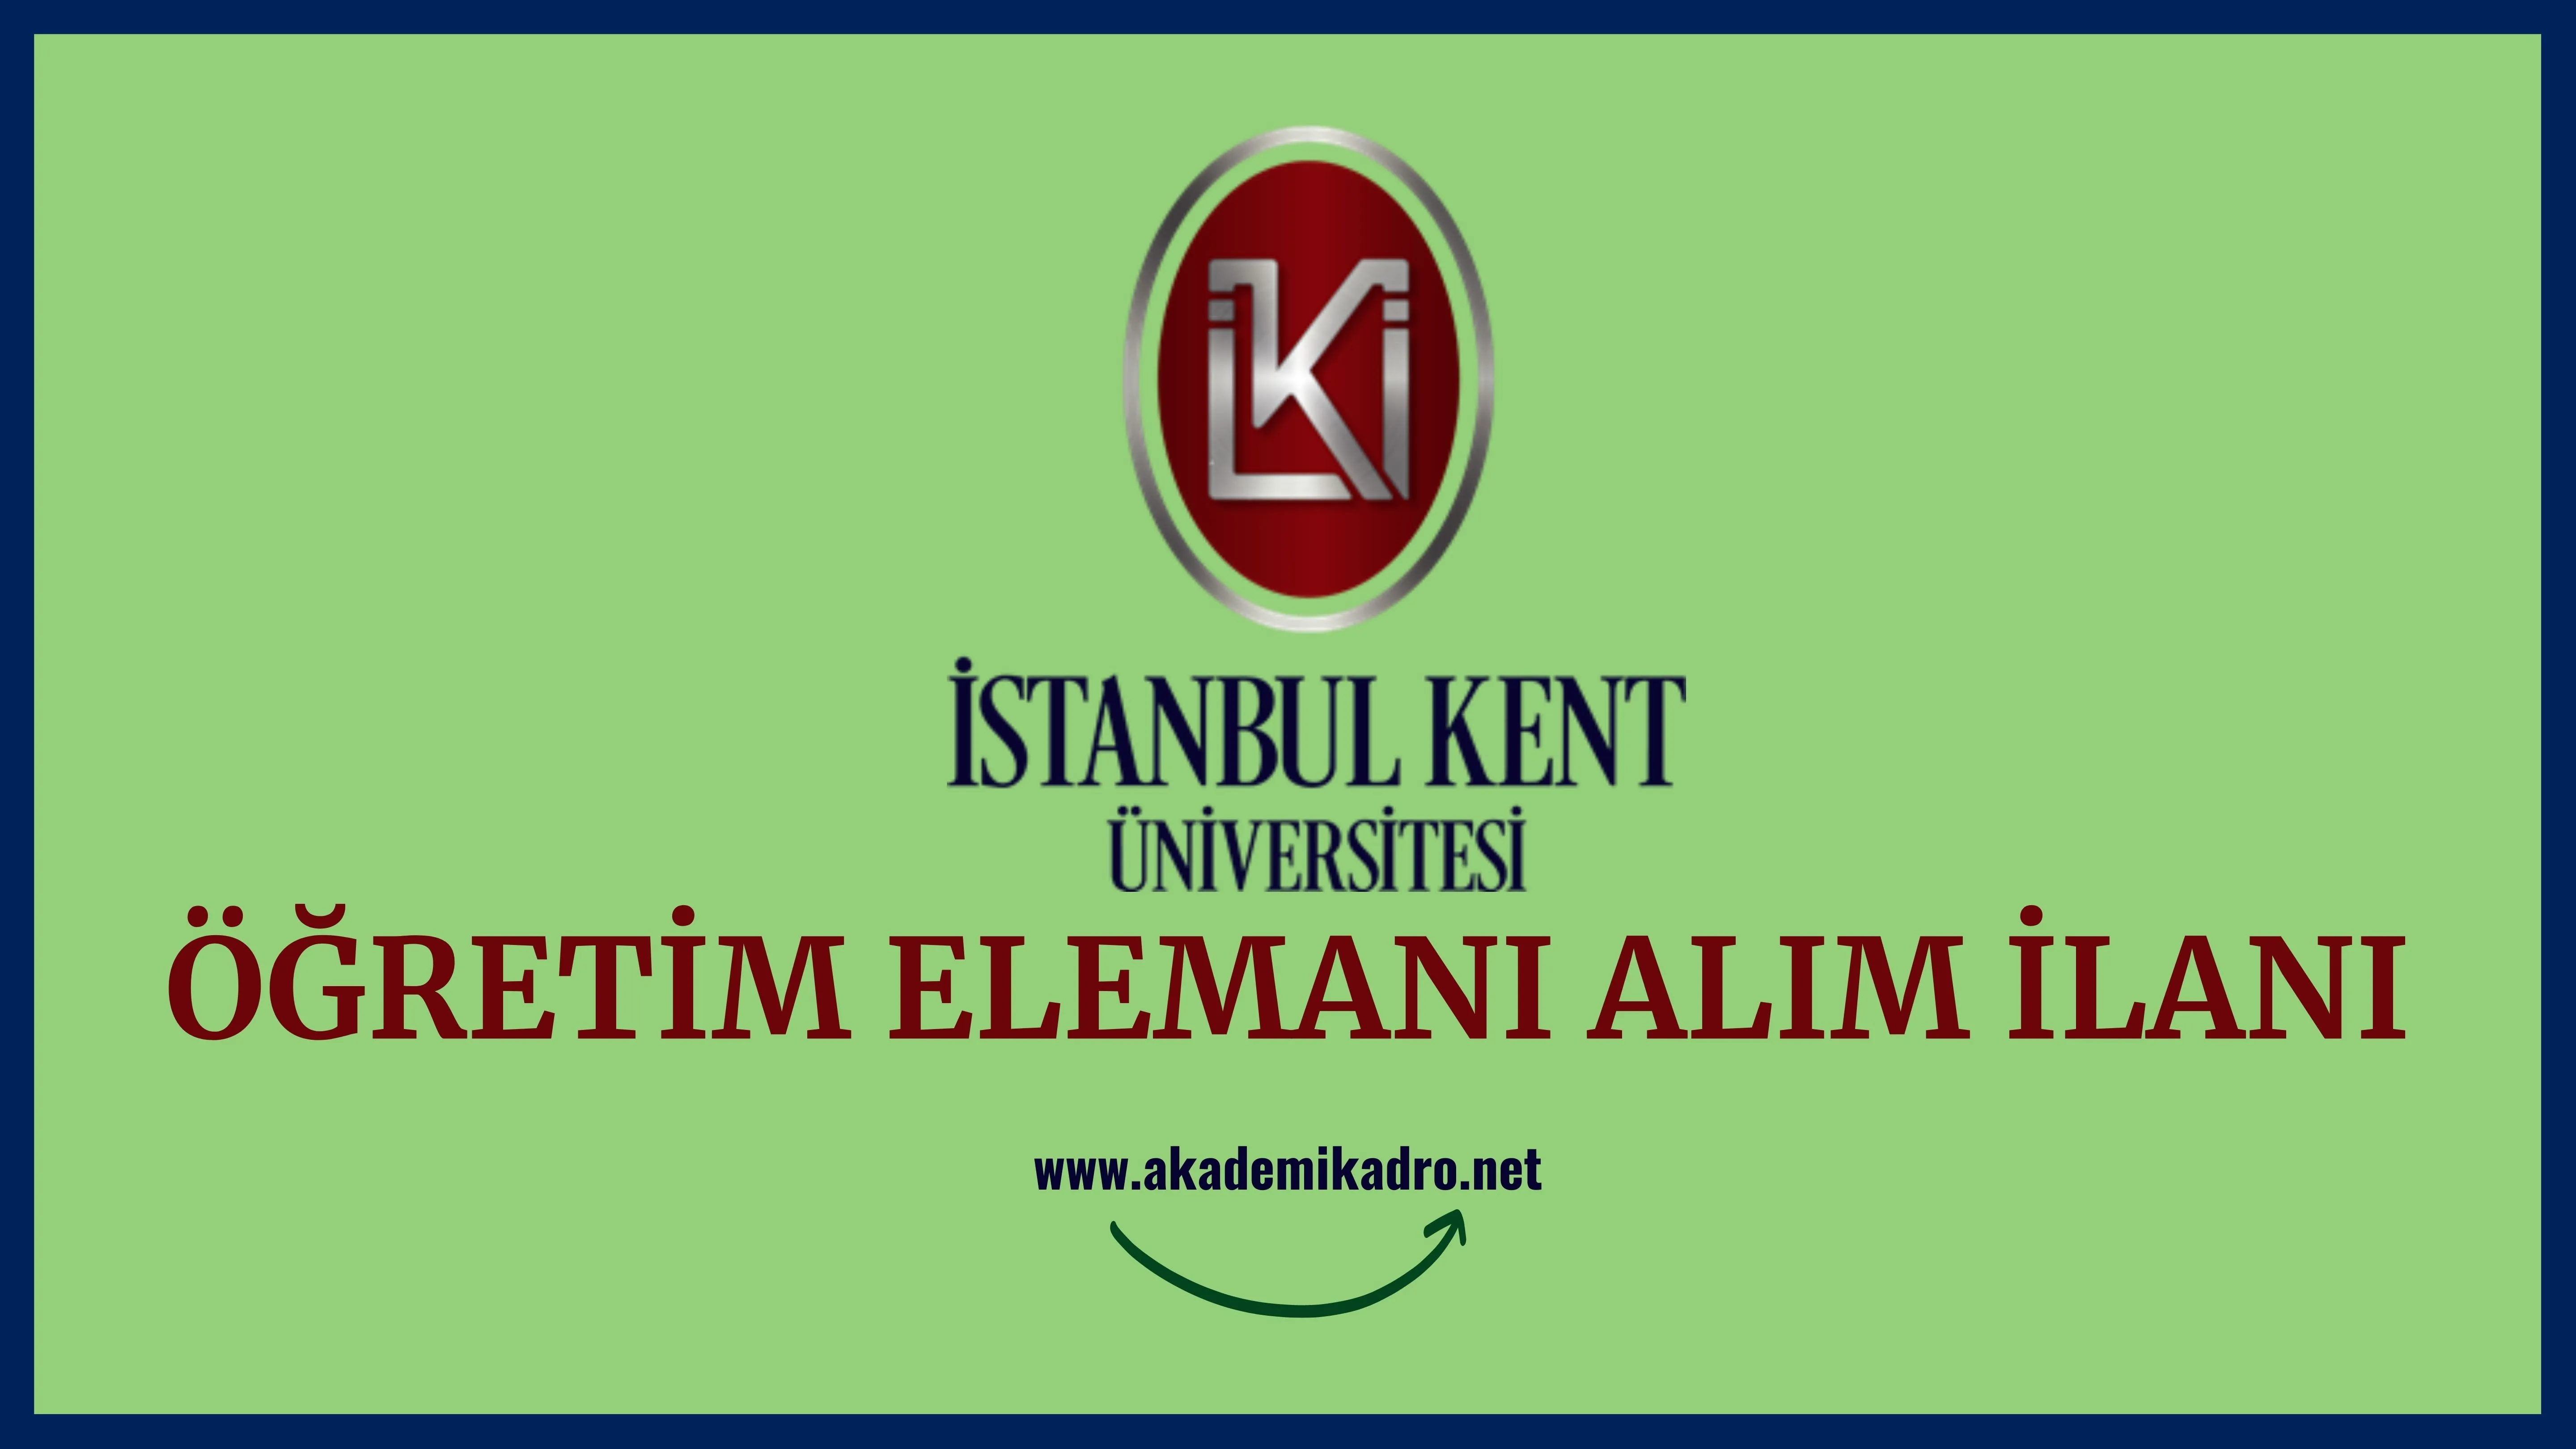 İstanbul Kent Üniversitesi 9 Araştırma görevlisi, 10 Öğretim görevlisi ve birçok alandan 39 Öğretim üyesi alacak.